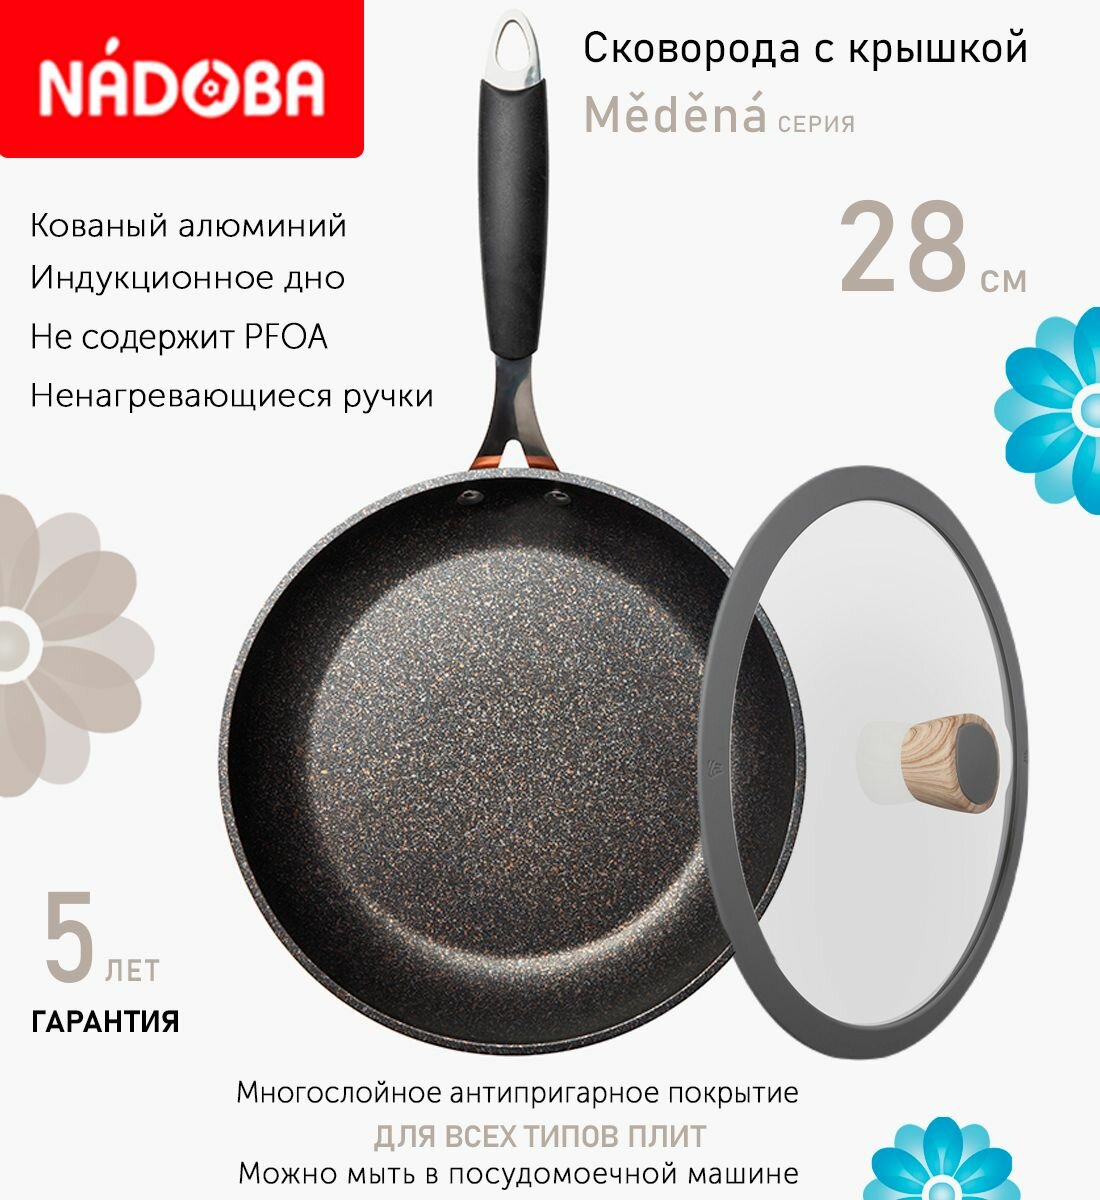 Сковорода с крышкой NADOBA 28см, серия "Medena" (арт. 728716/751211)